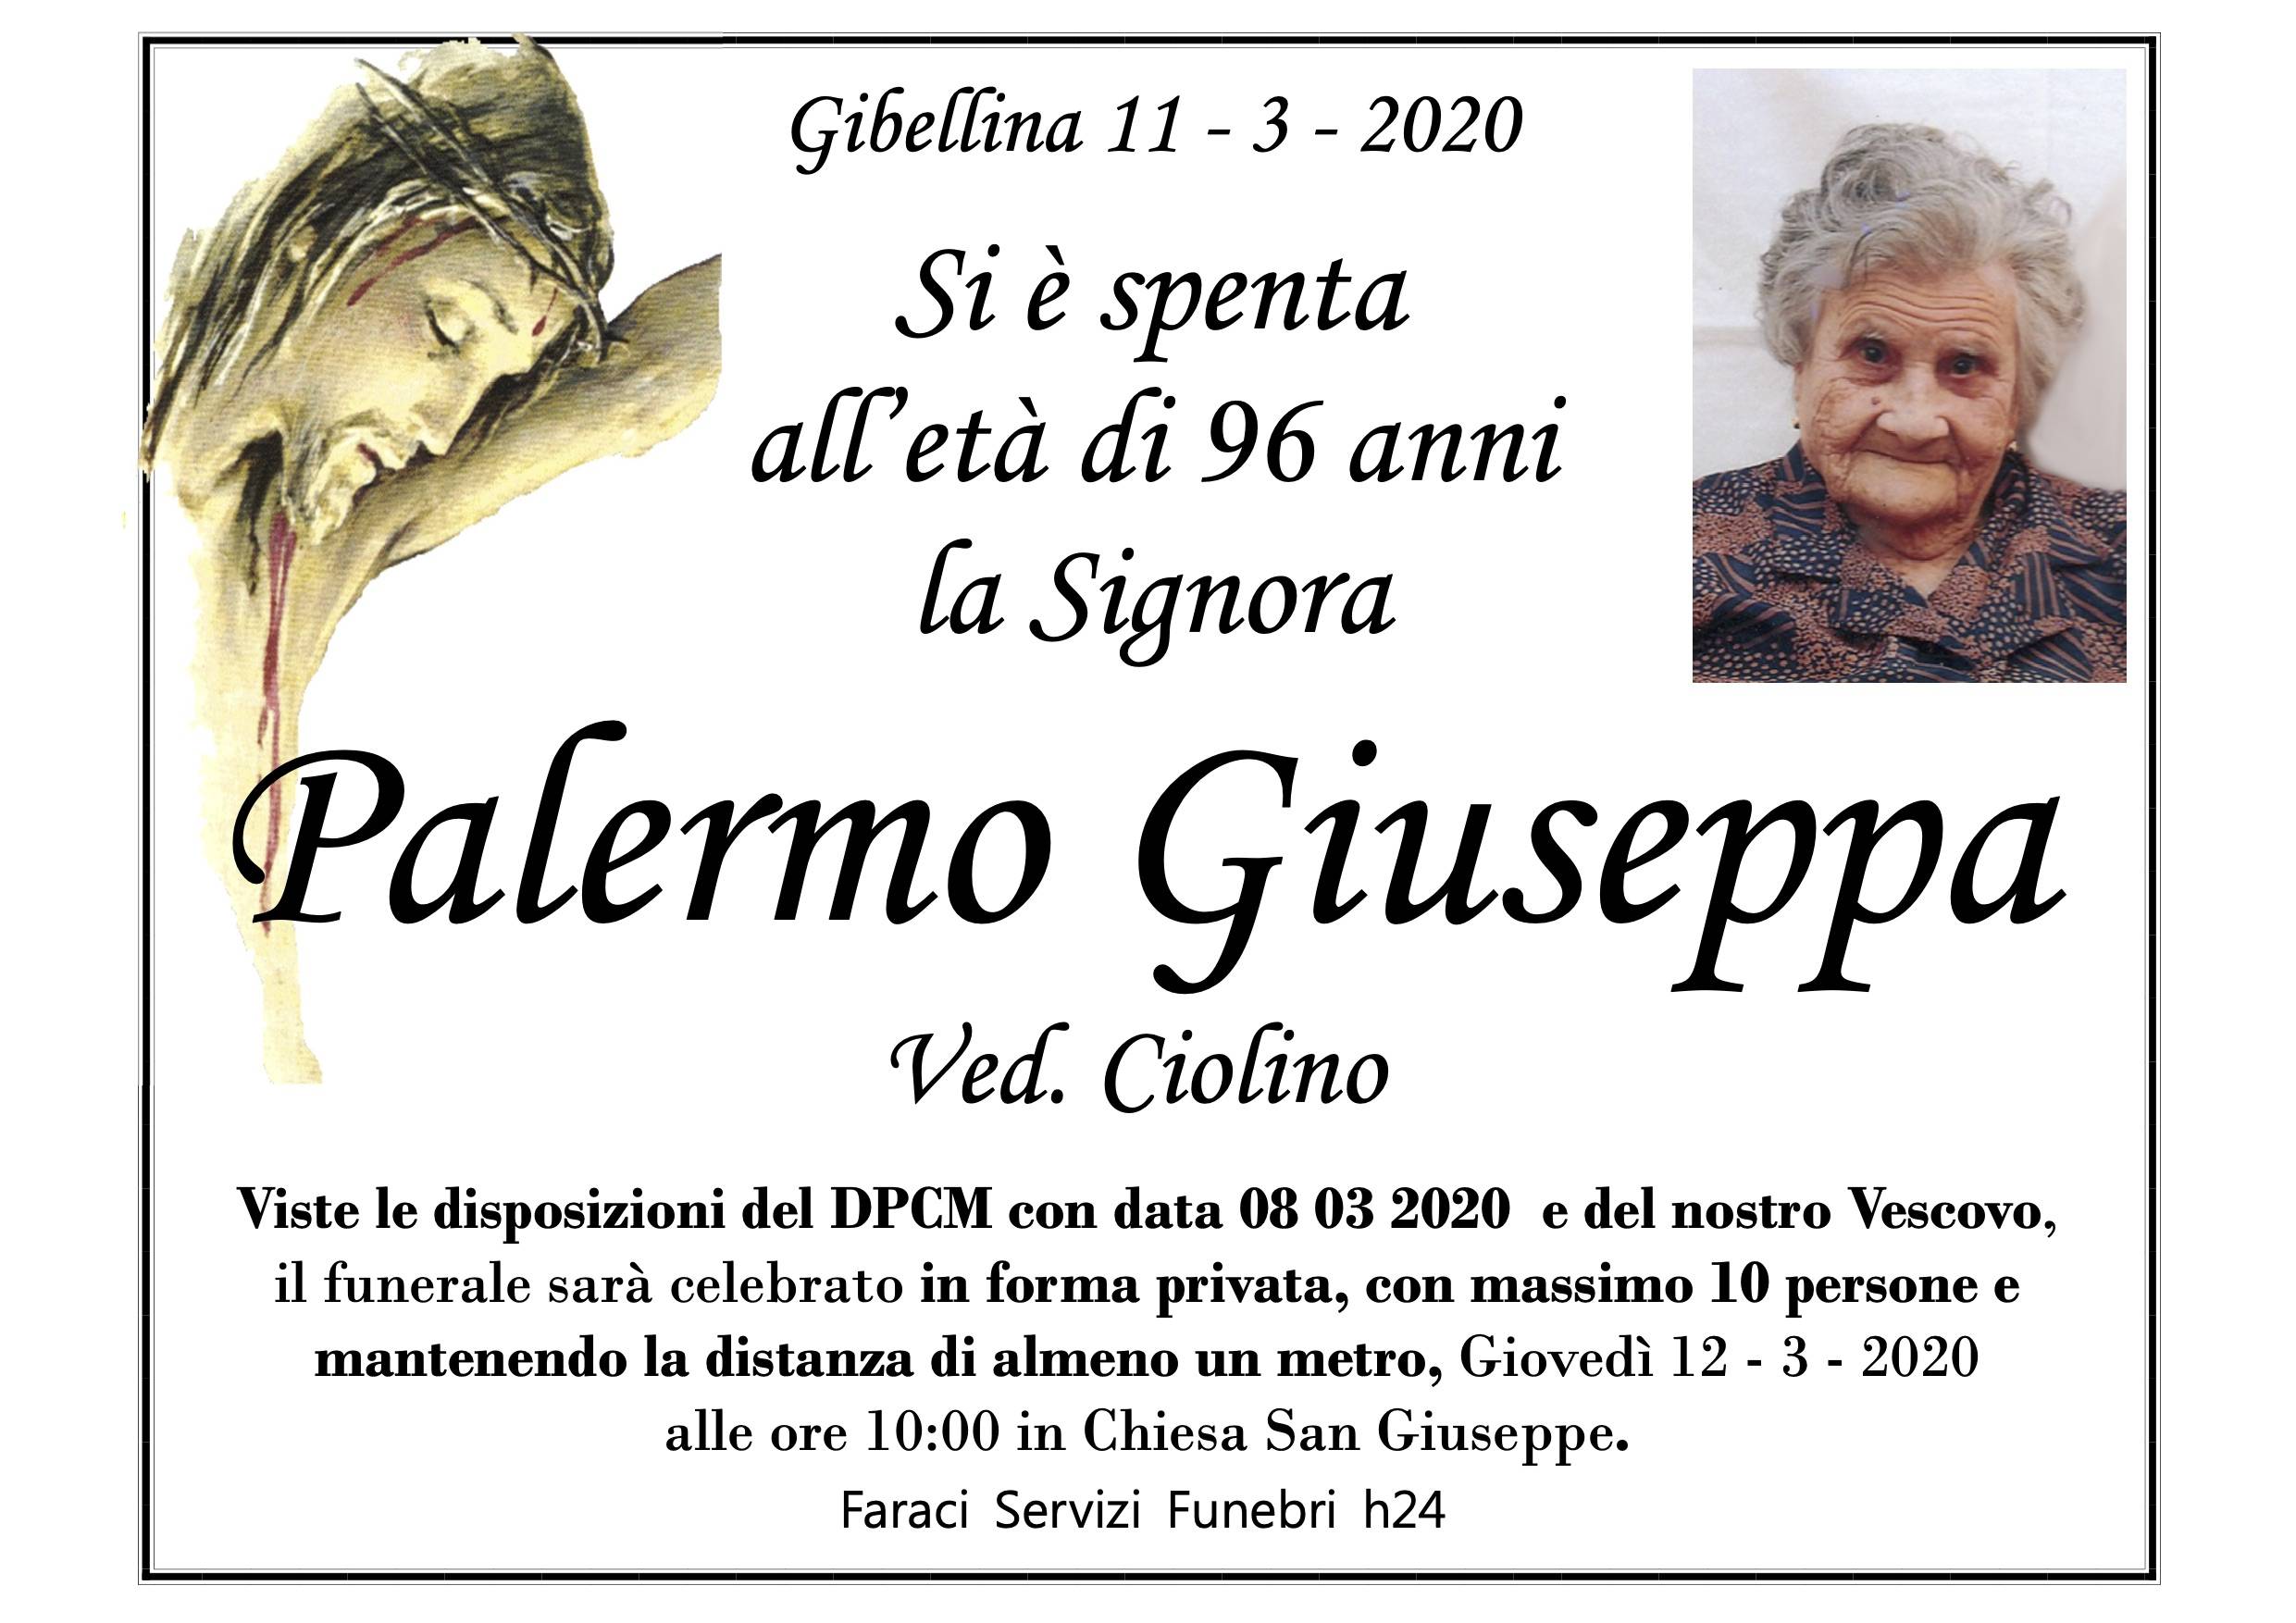 Giuseppa Palermo